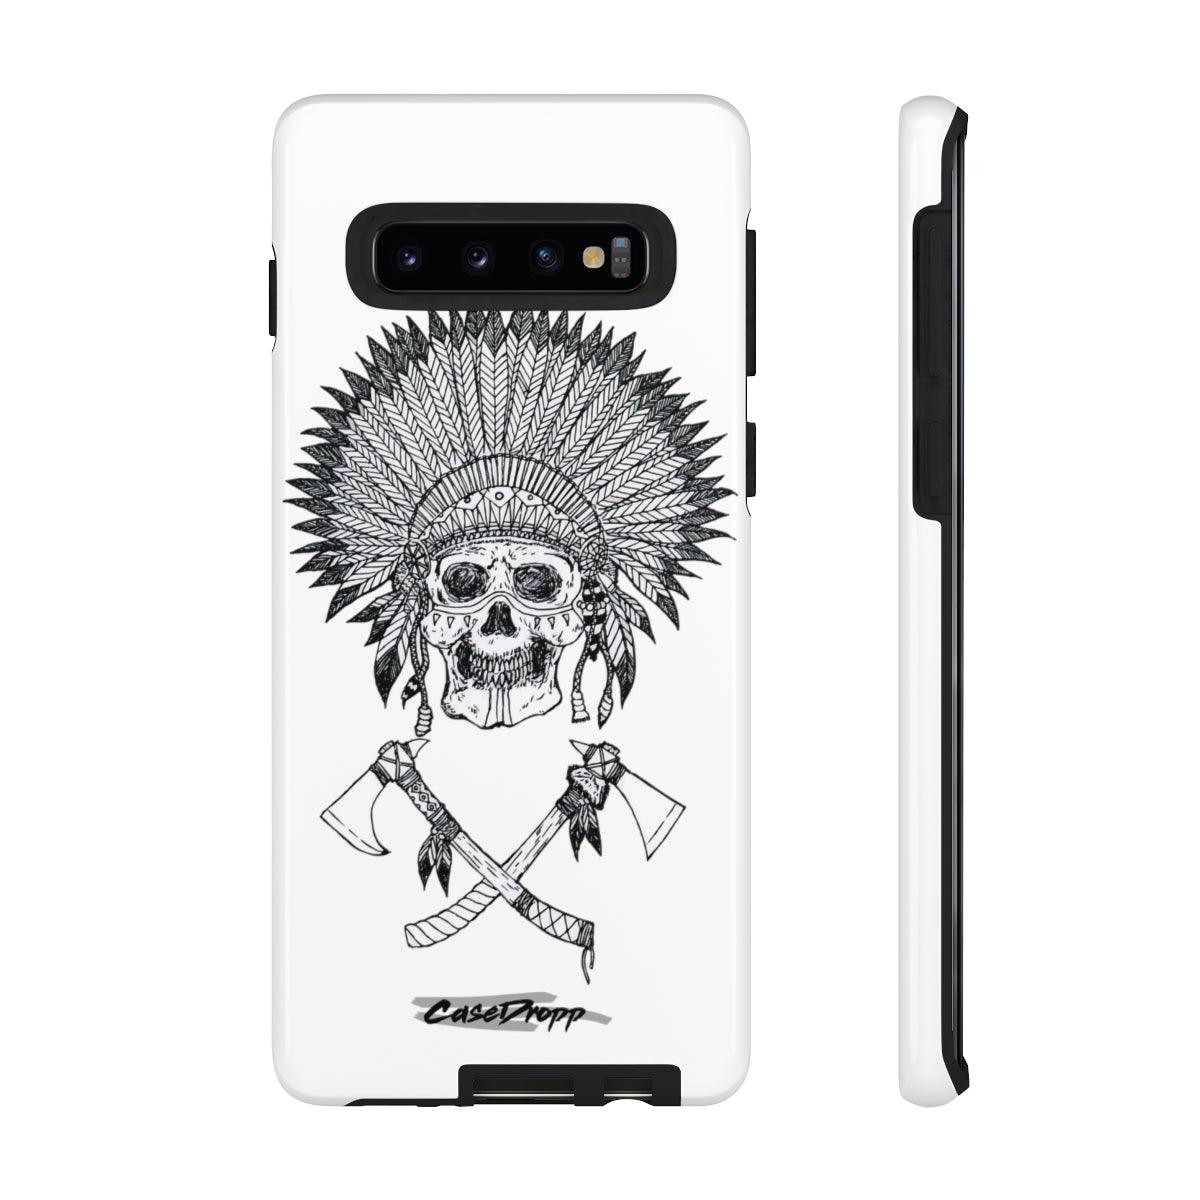 Skull Warrior - Tough Samsung Case CaseDropp